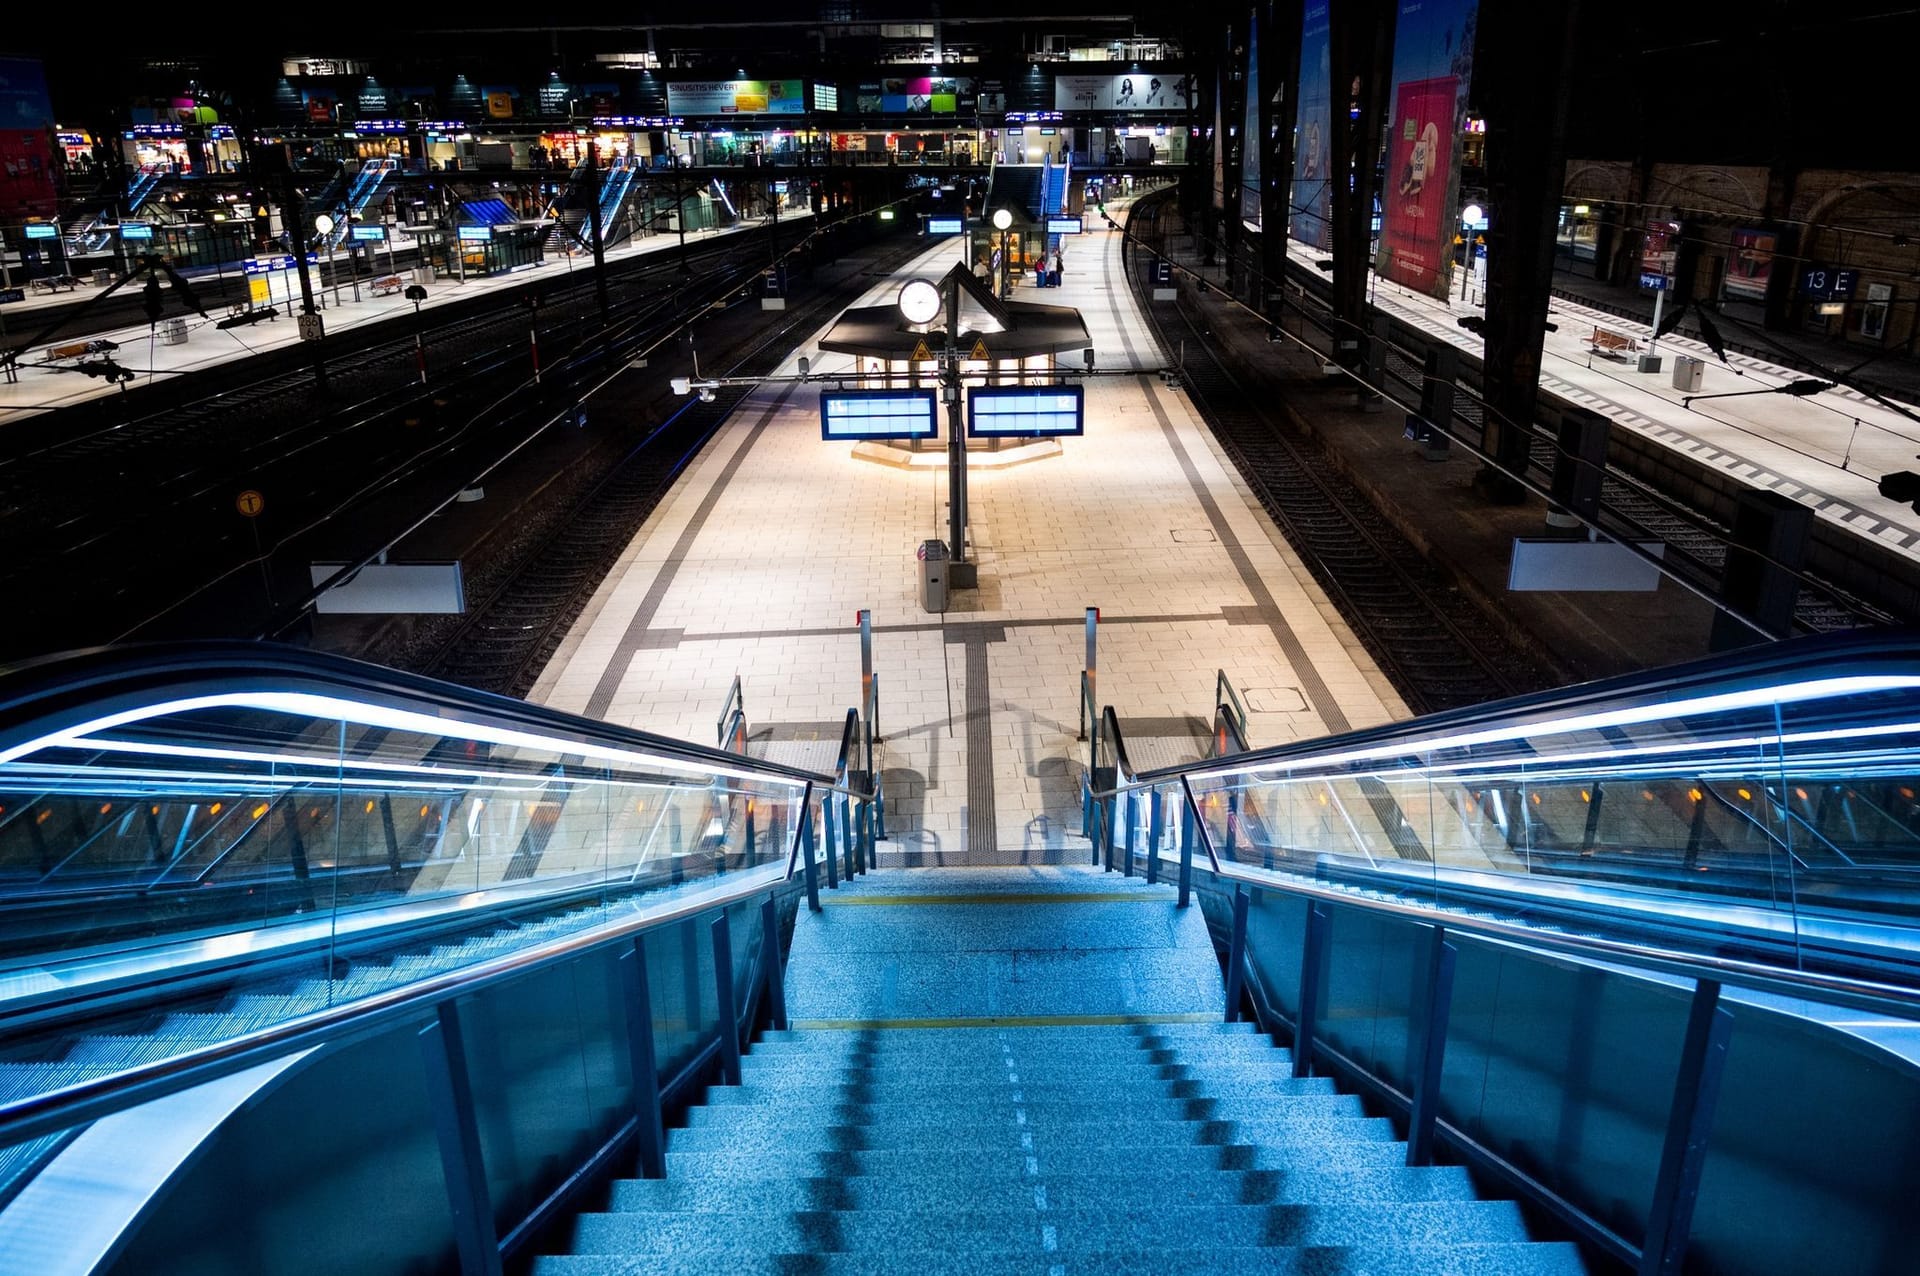 Die Bahnsteige im Hauptbahnhof sind fast menschenleer: Der Streik der Eisenbahn- und Verkehrsgewerkschaft (EVG) hat für massive Ausfälle gesorgt.